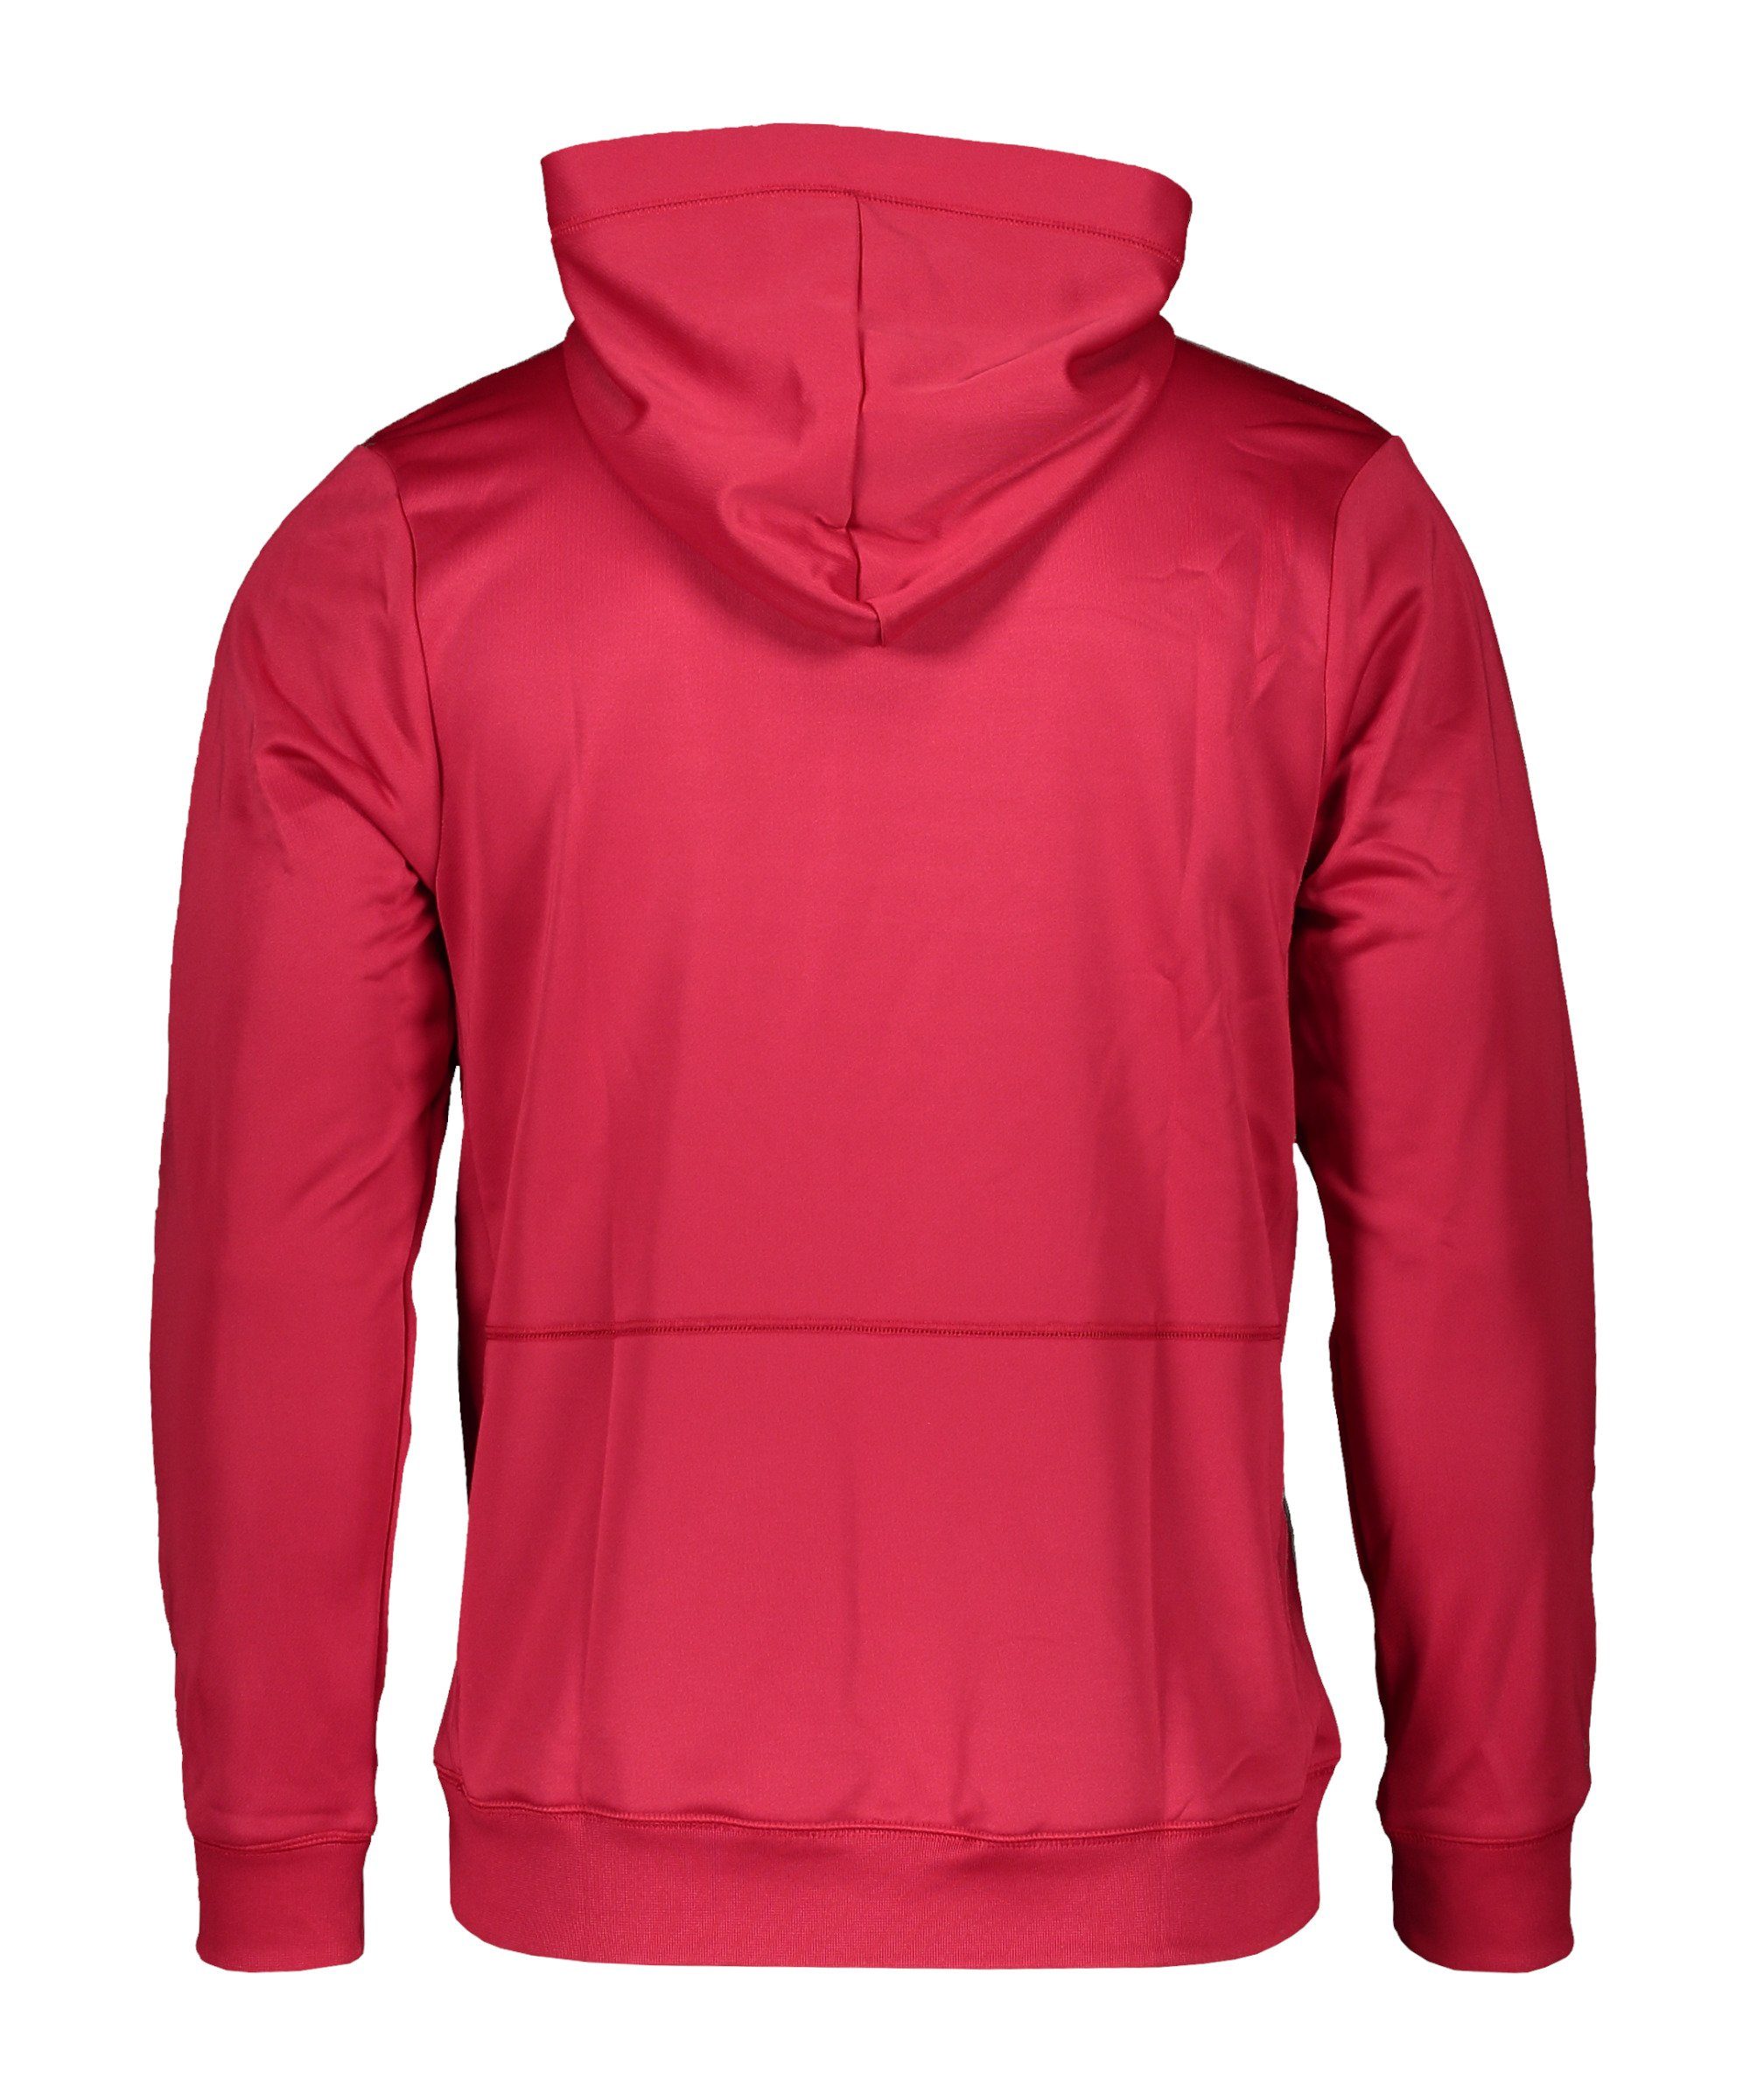 Nike Sportswear Sweatshirt F.C. Fleece Hoody pinkschwarzweiss